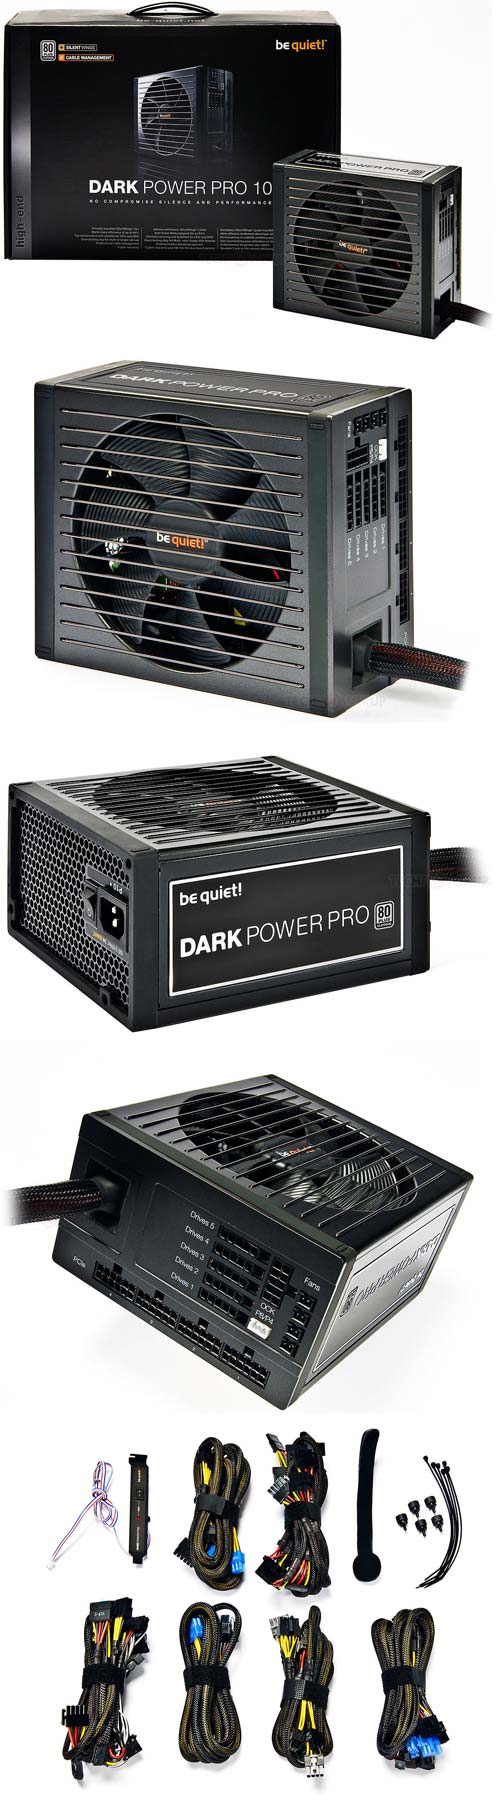 Dark Power Pro 10 - тишина и эффективность